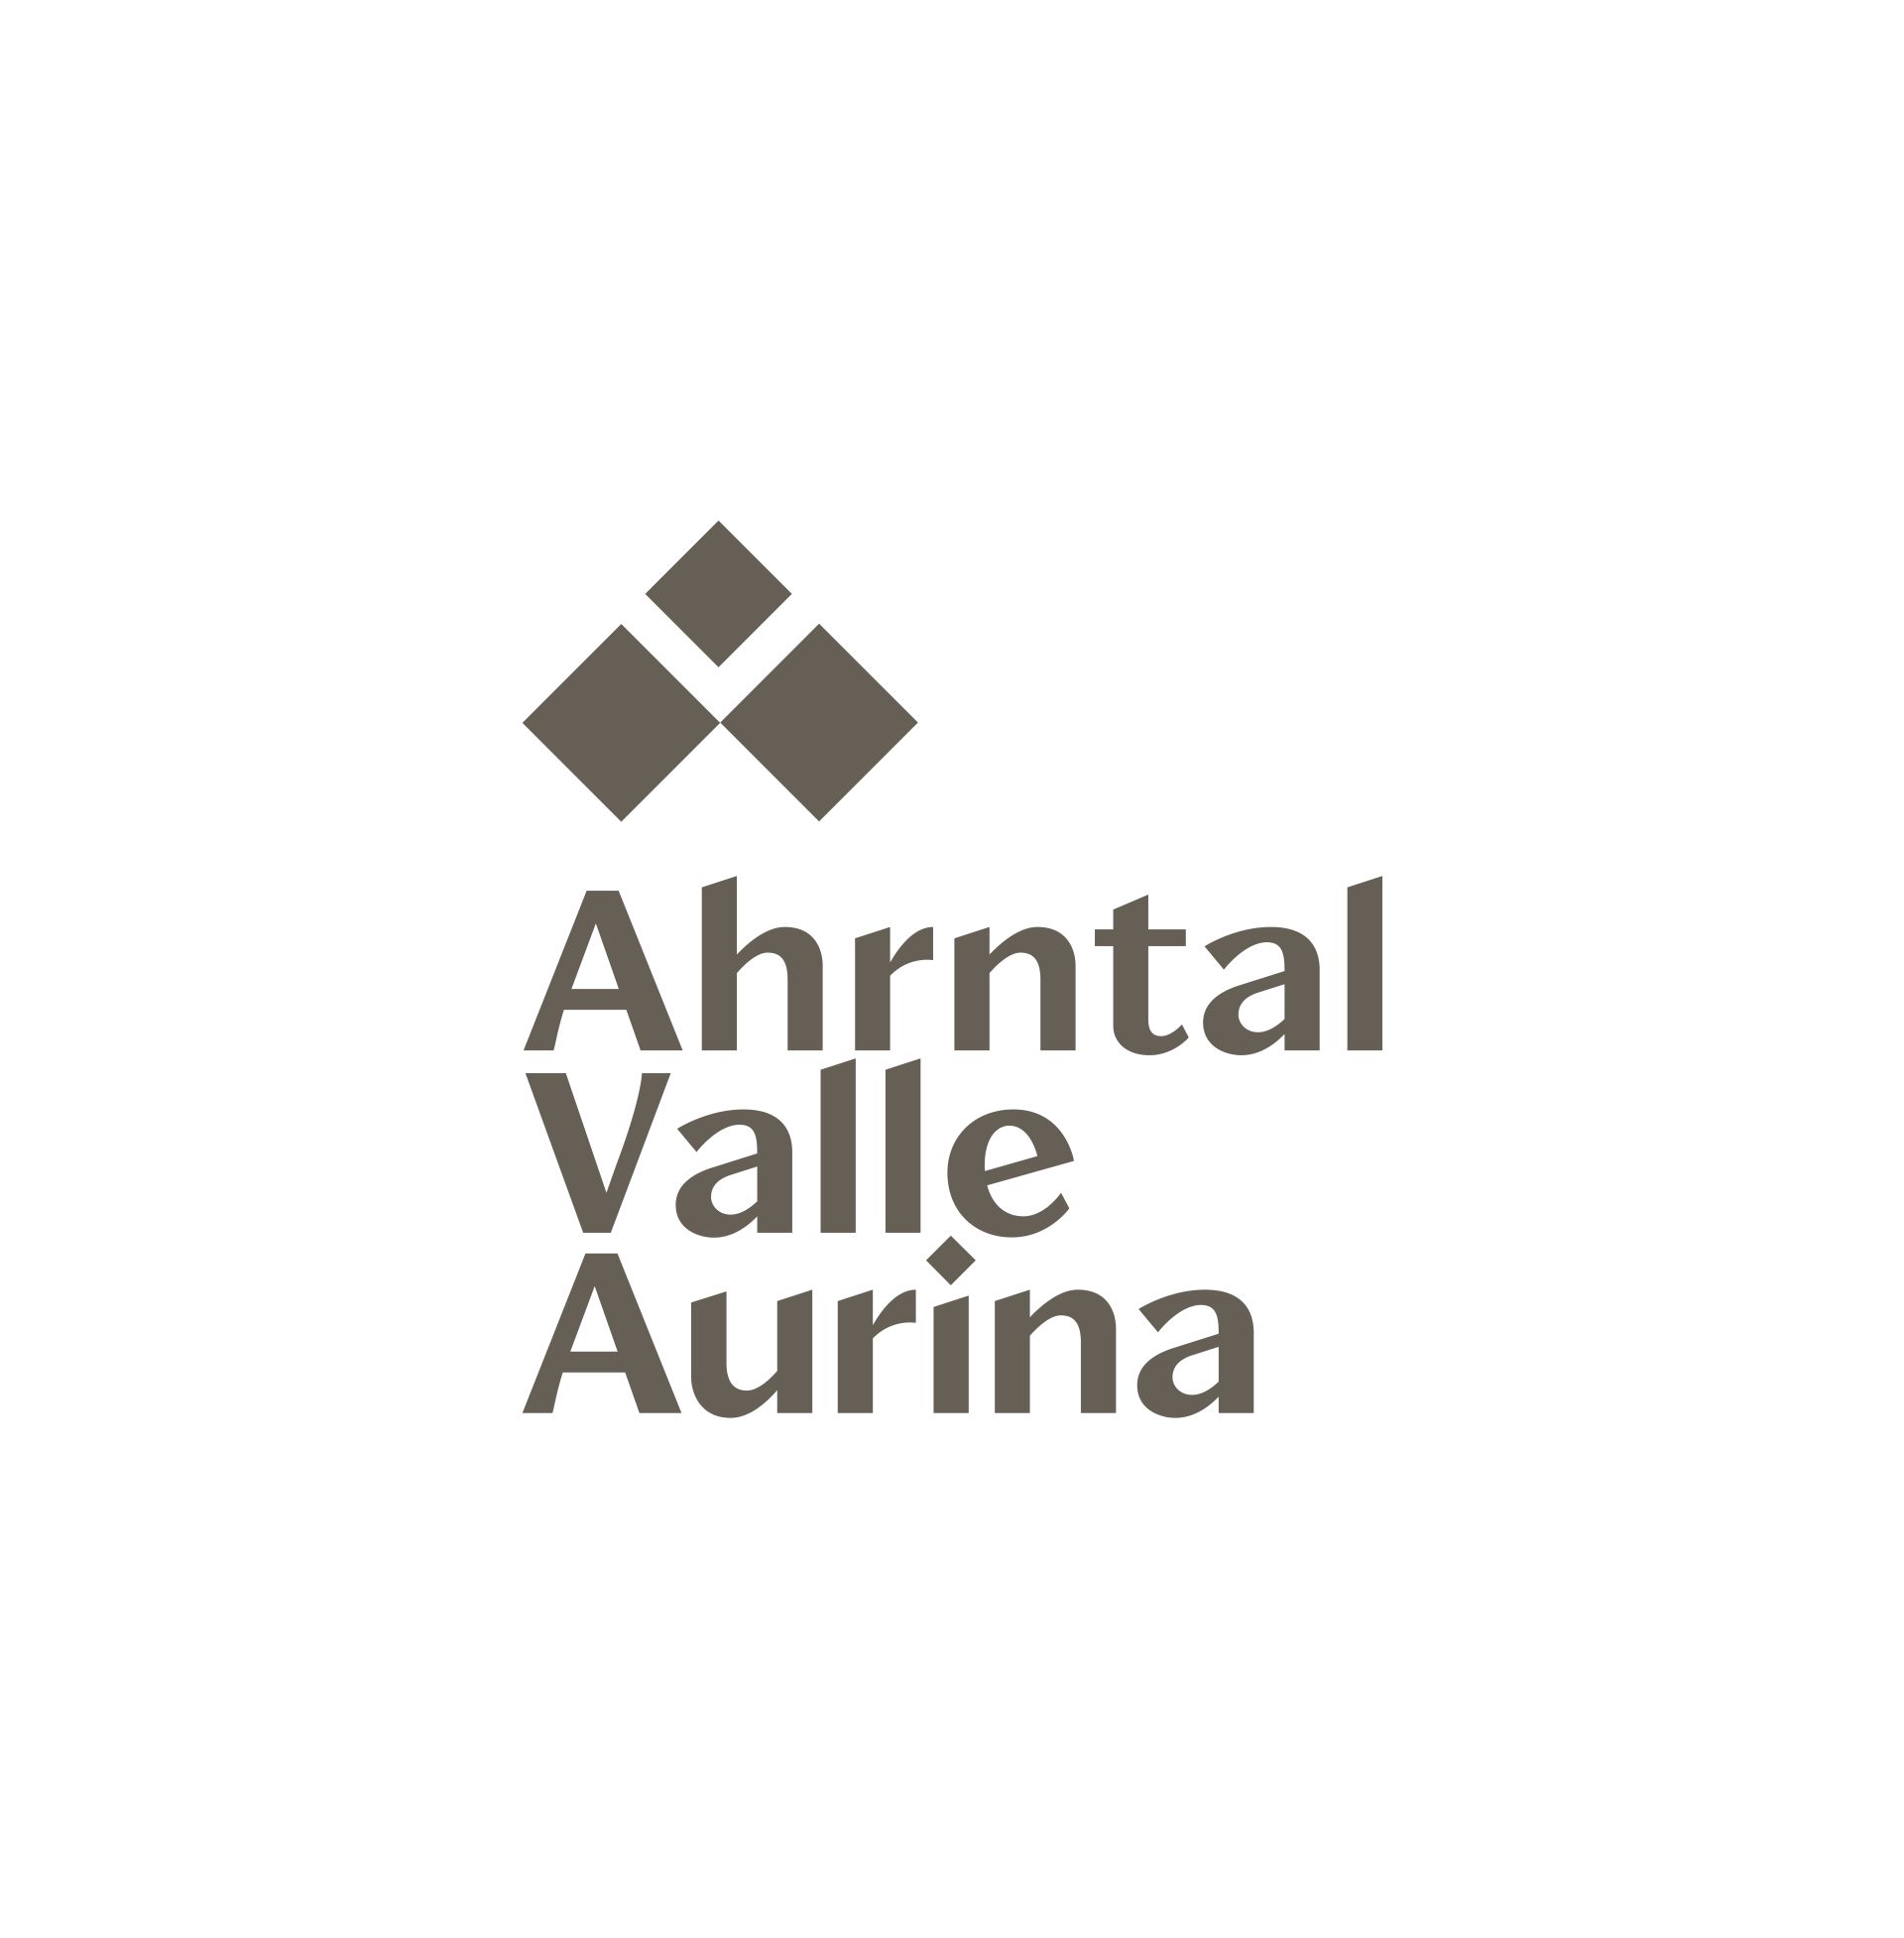 Ahrntal Valle Aurina